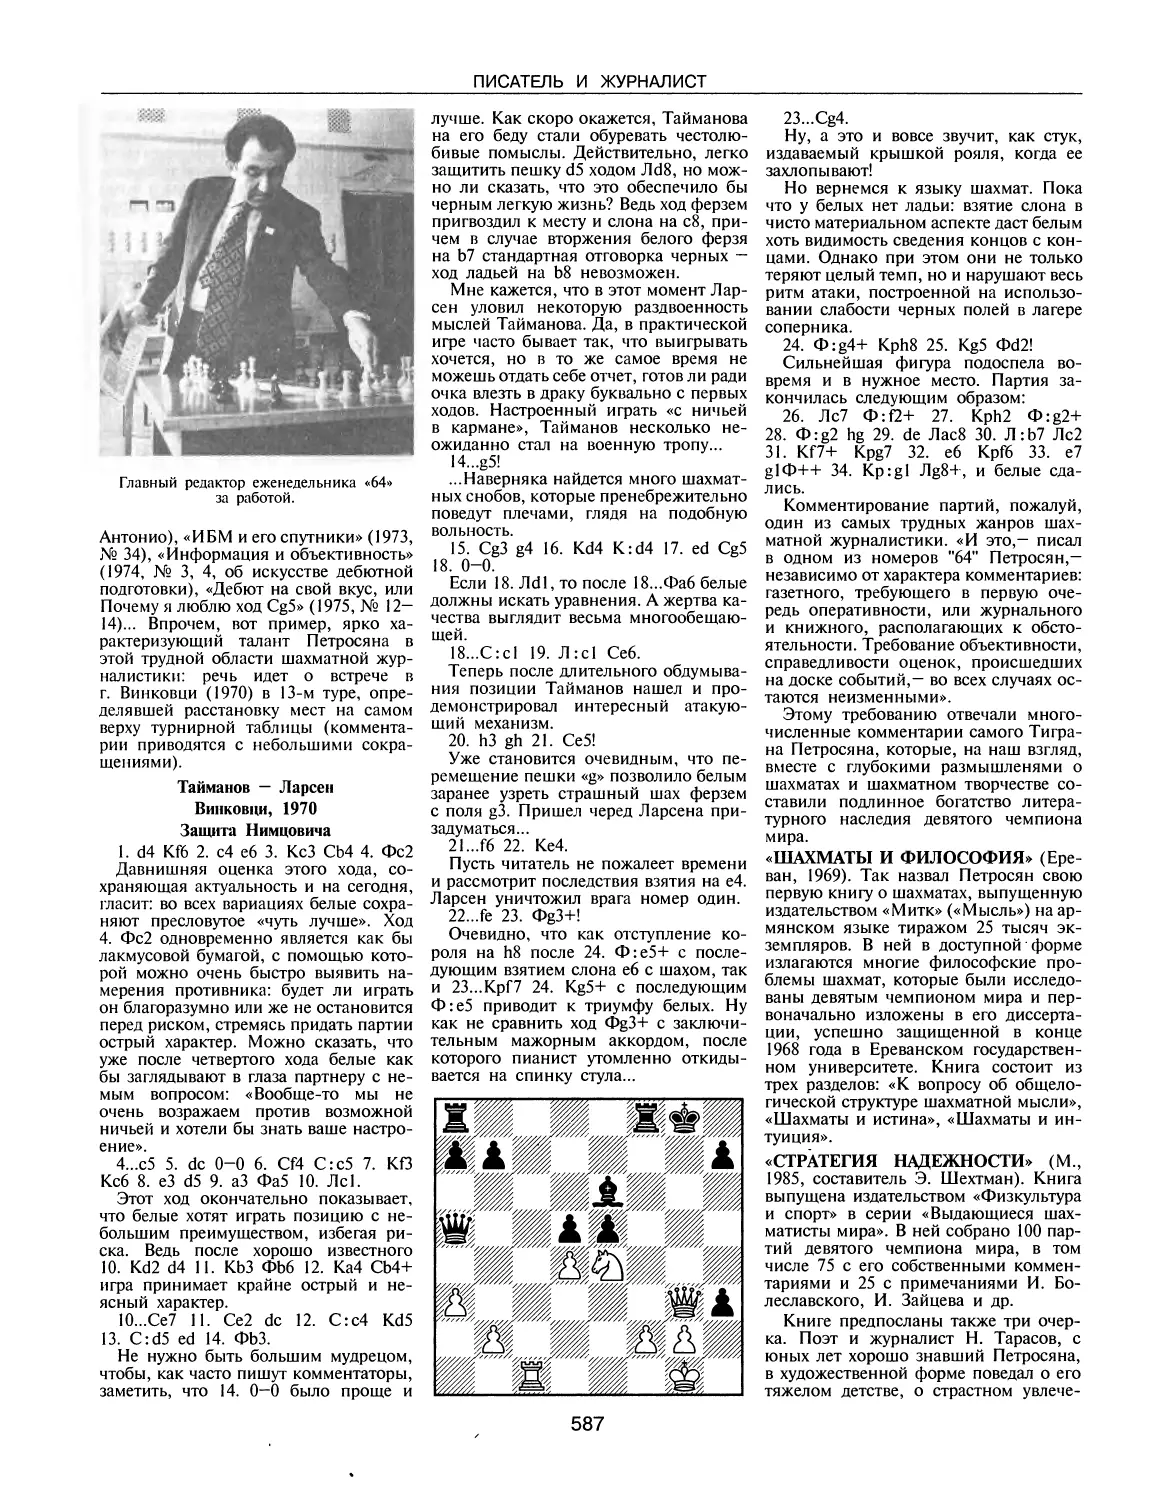 «Шахматы и философия»
«Стратегия надежности»